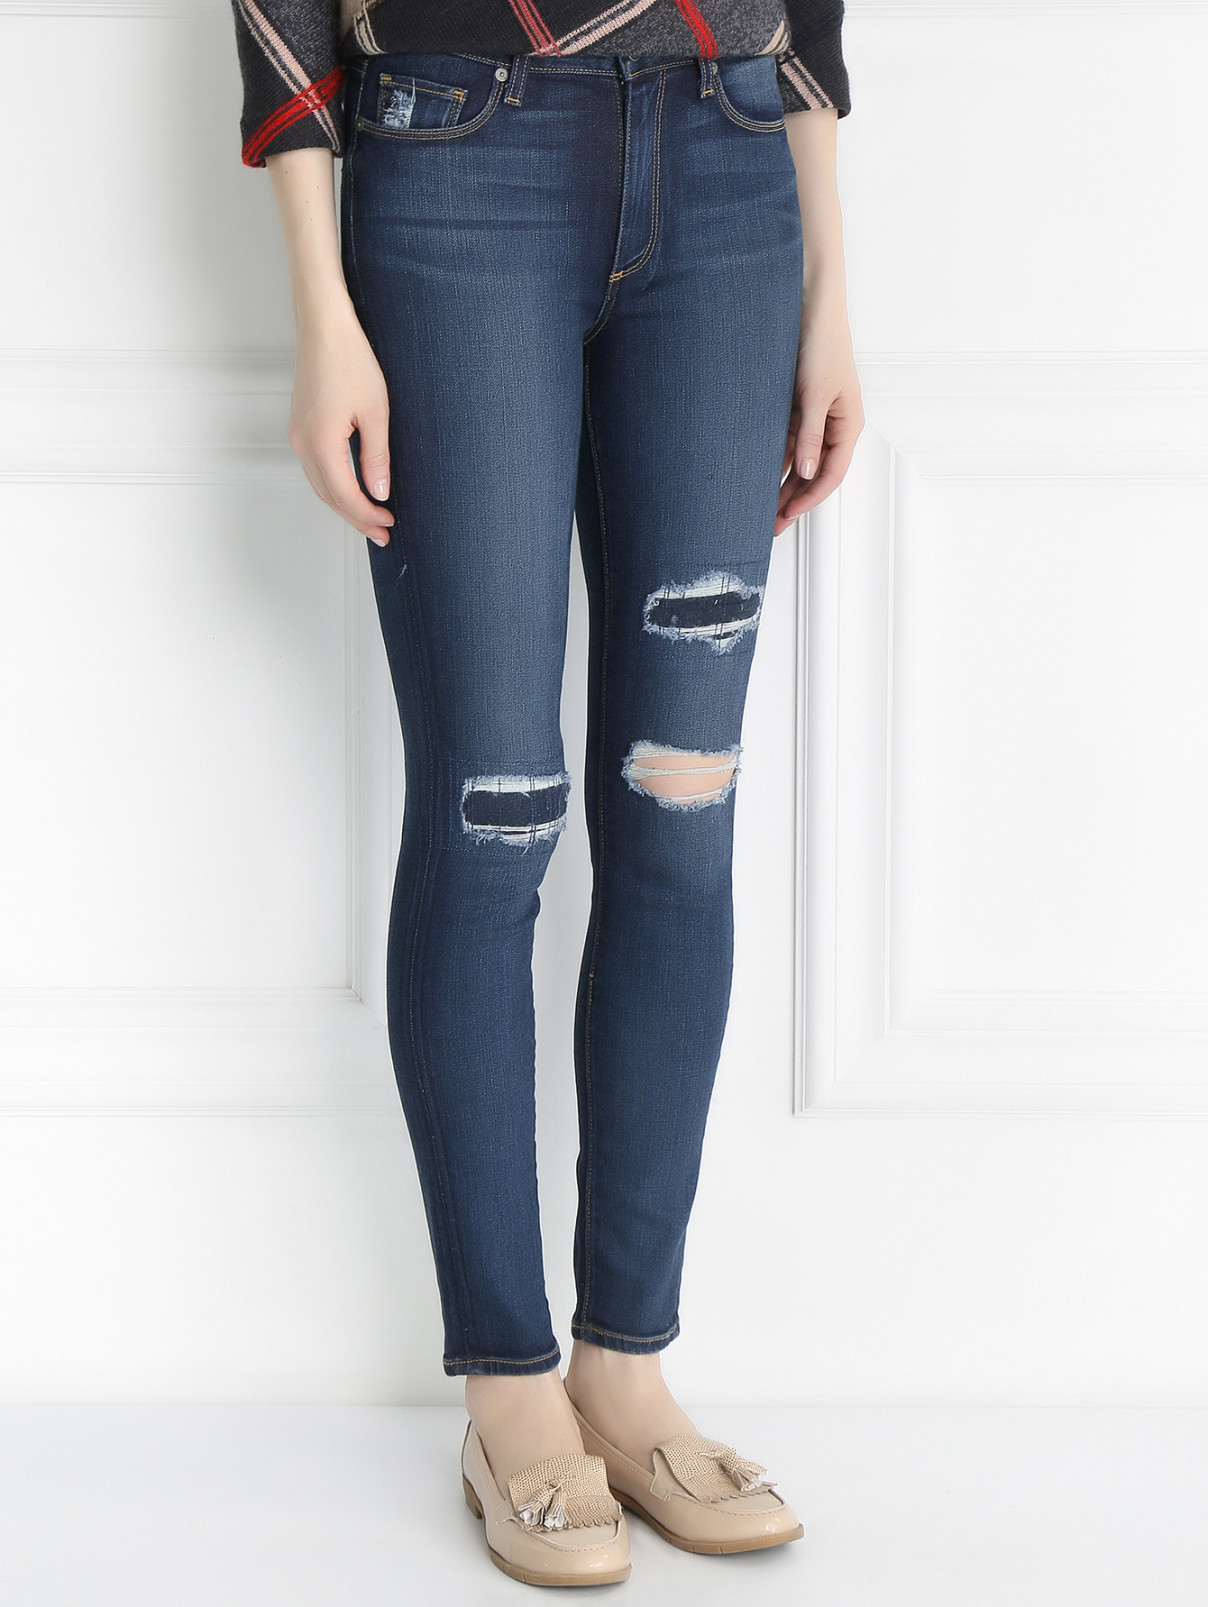 Узкие джинсы с потертостями Paige  –  Модель Верх-Низ  – Цвет:  Синий